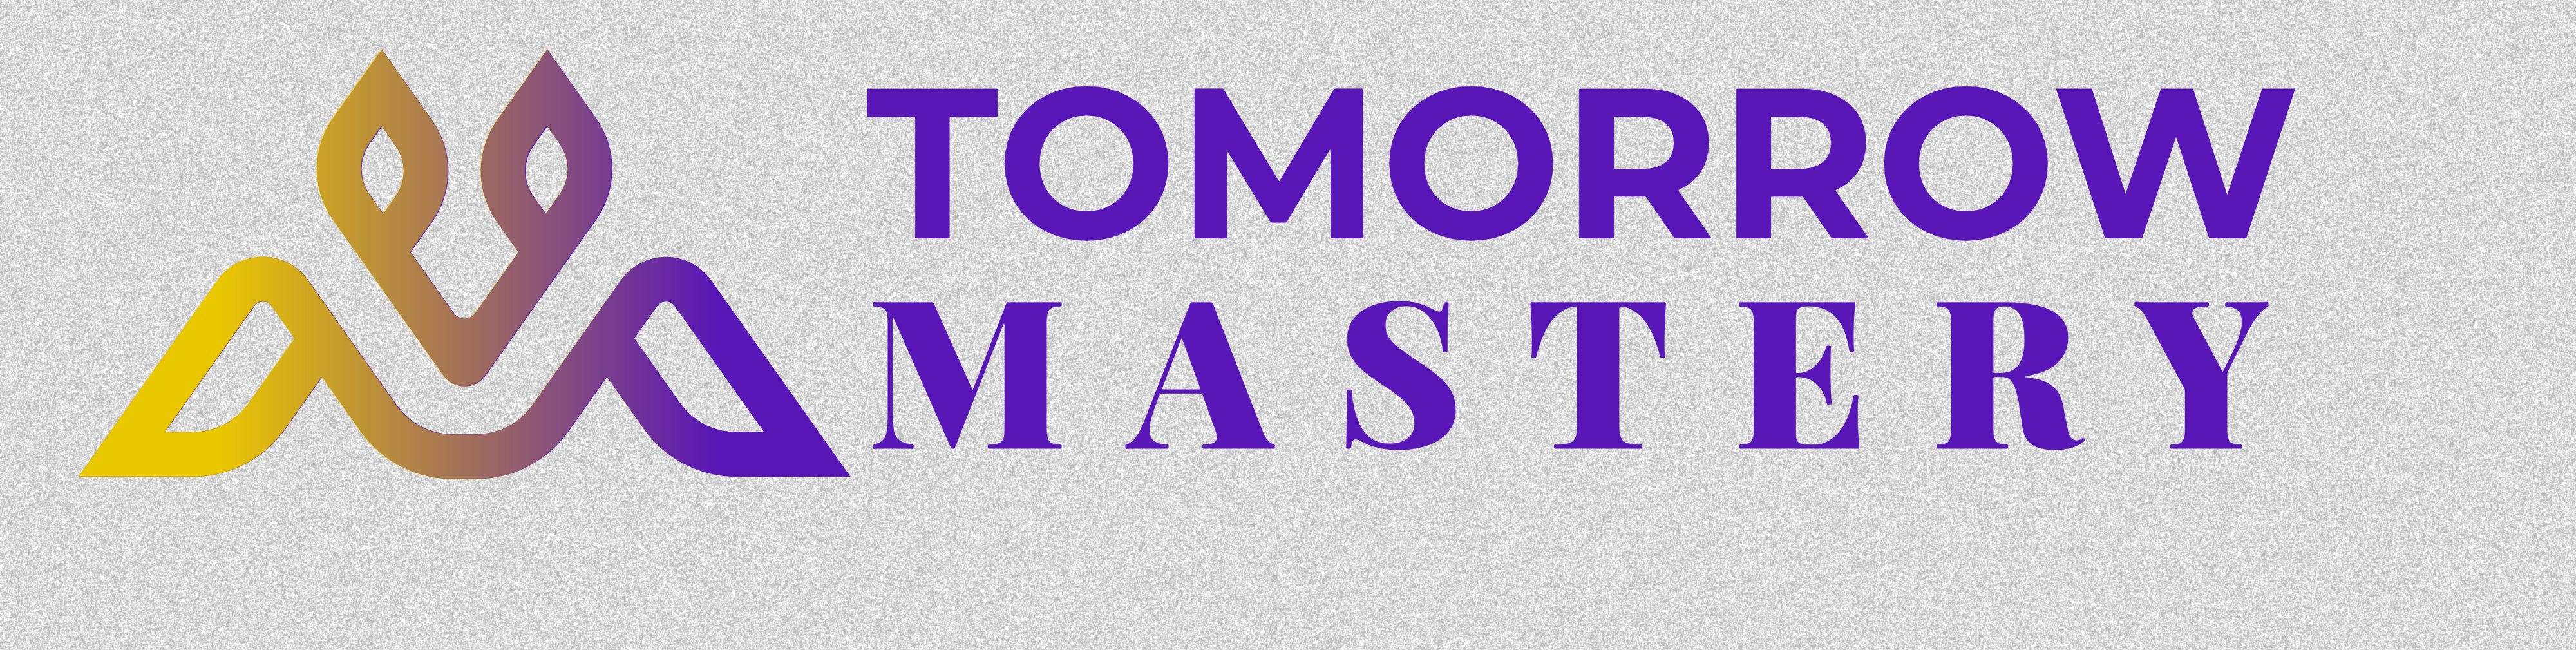 Tomorrow Mastery